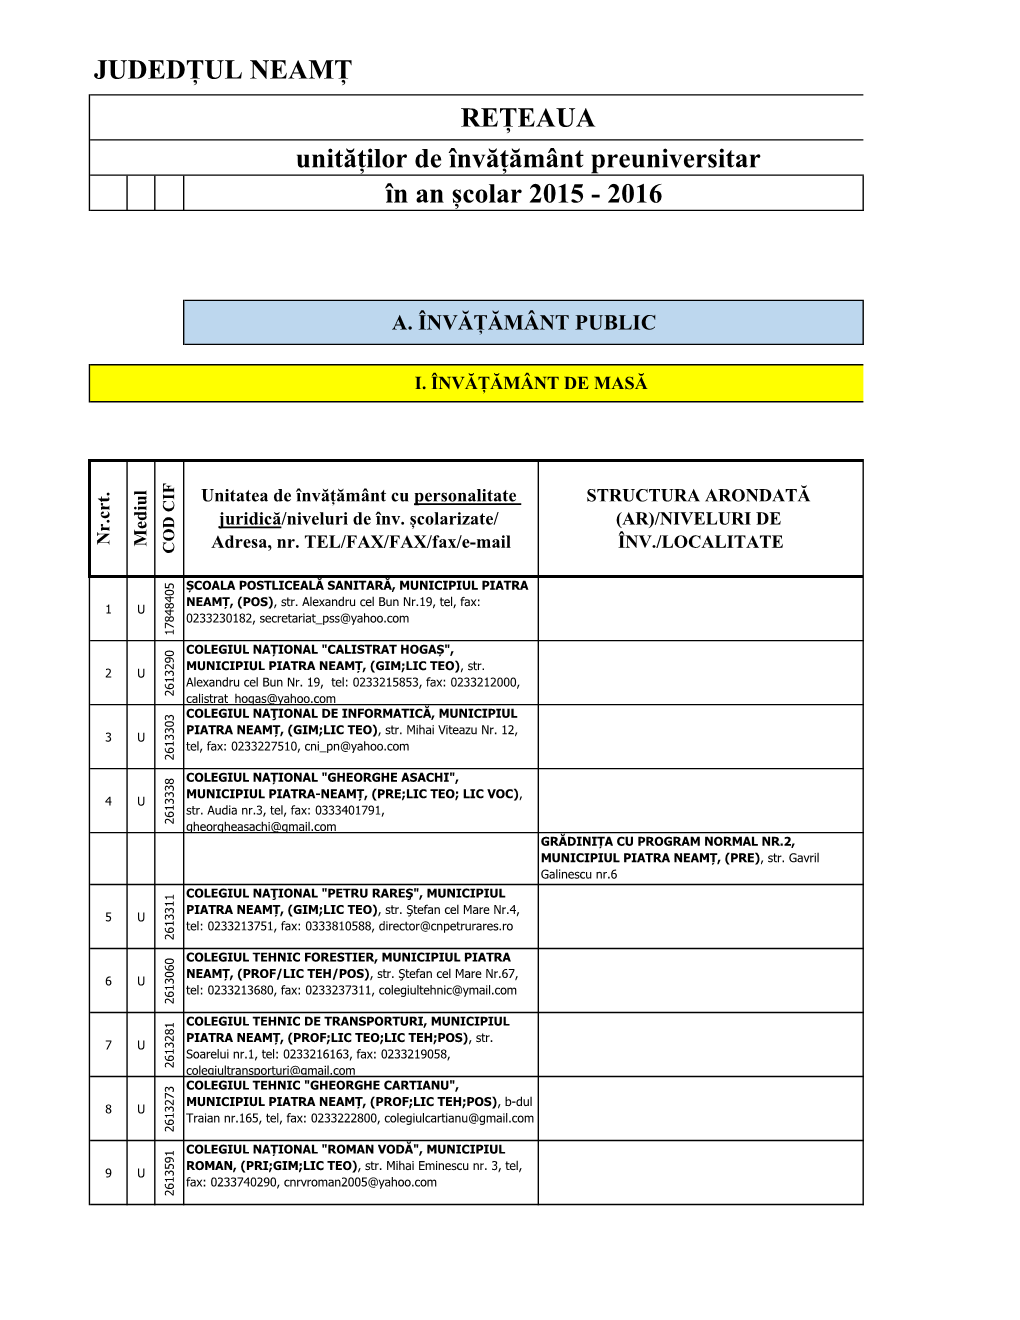 JUDEDȚUL NEAMȚ REȚEAUA Unităților De Învățământ Preuniversitar În an Școlar 2015 - 2016